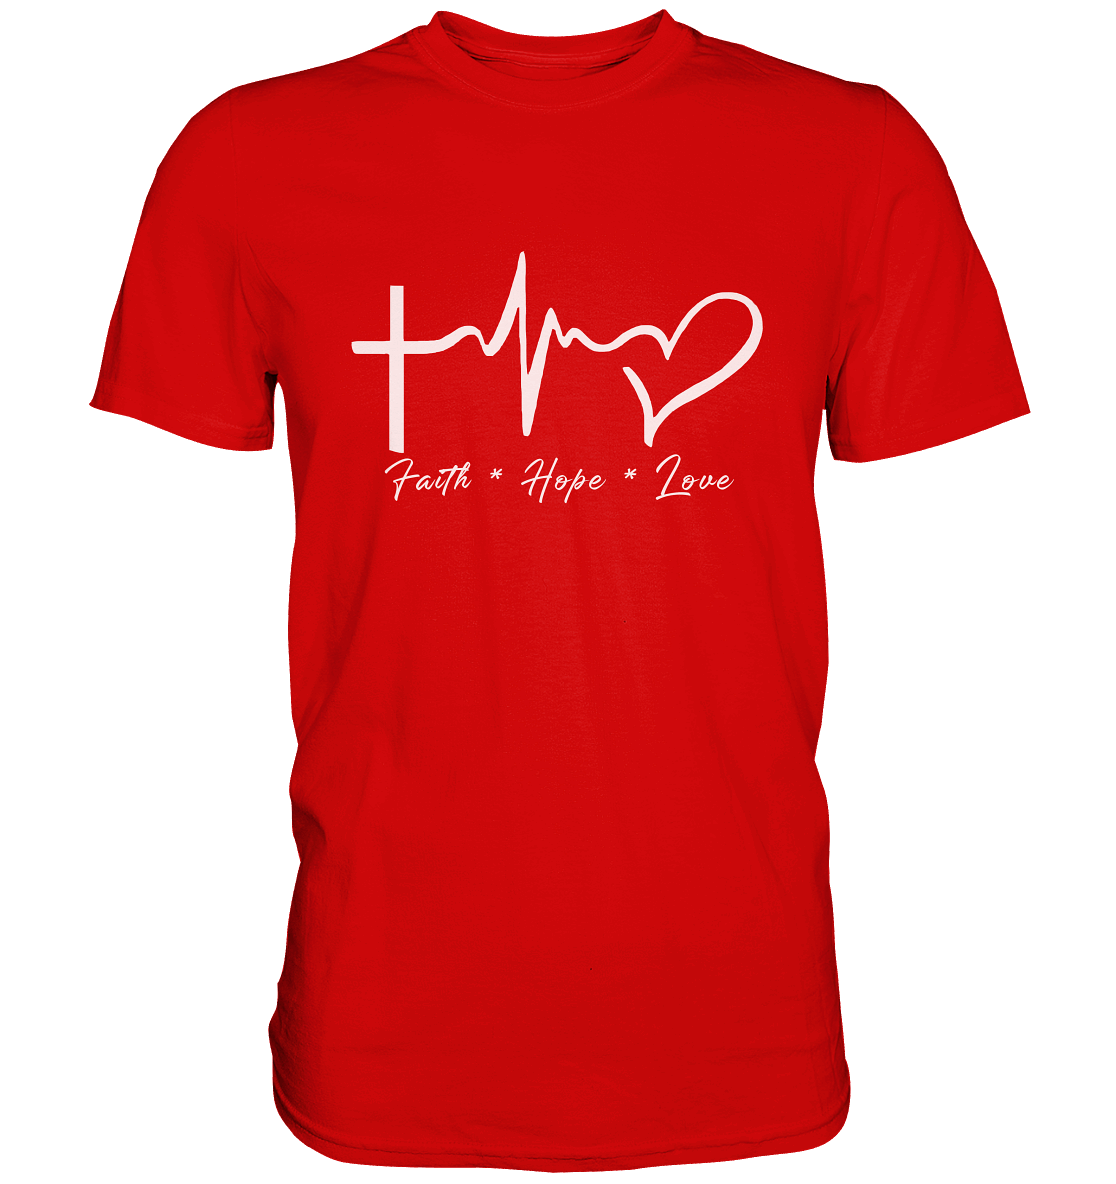 Faith * Hope * Love - Premium Shirt